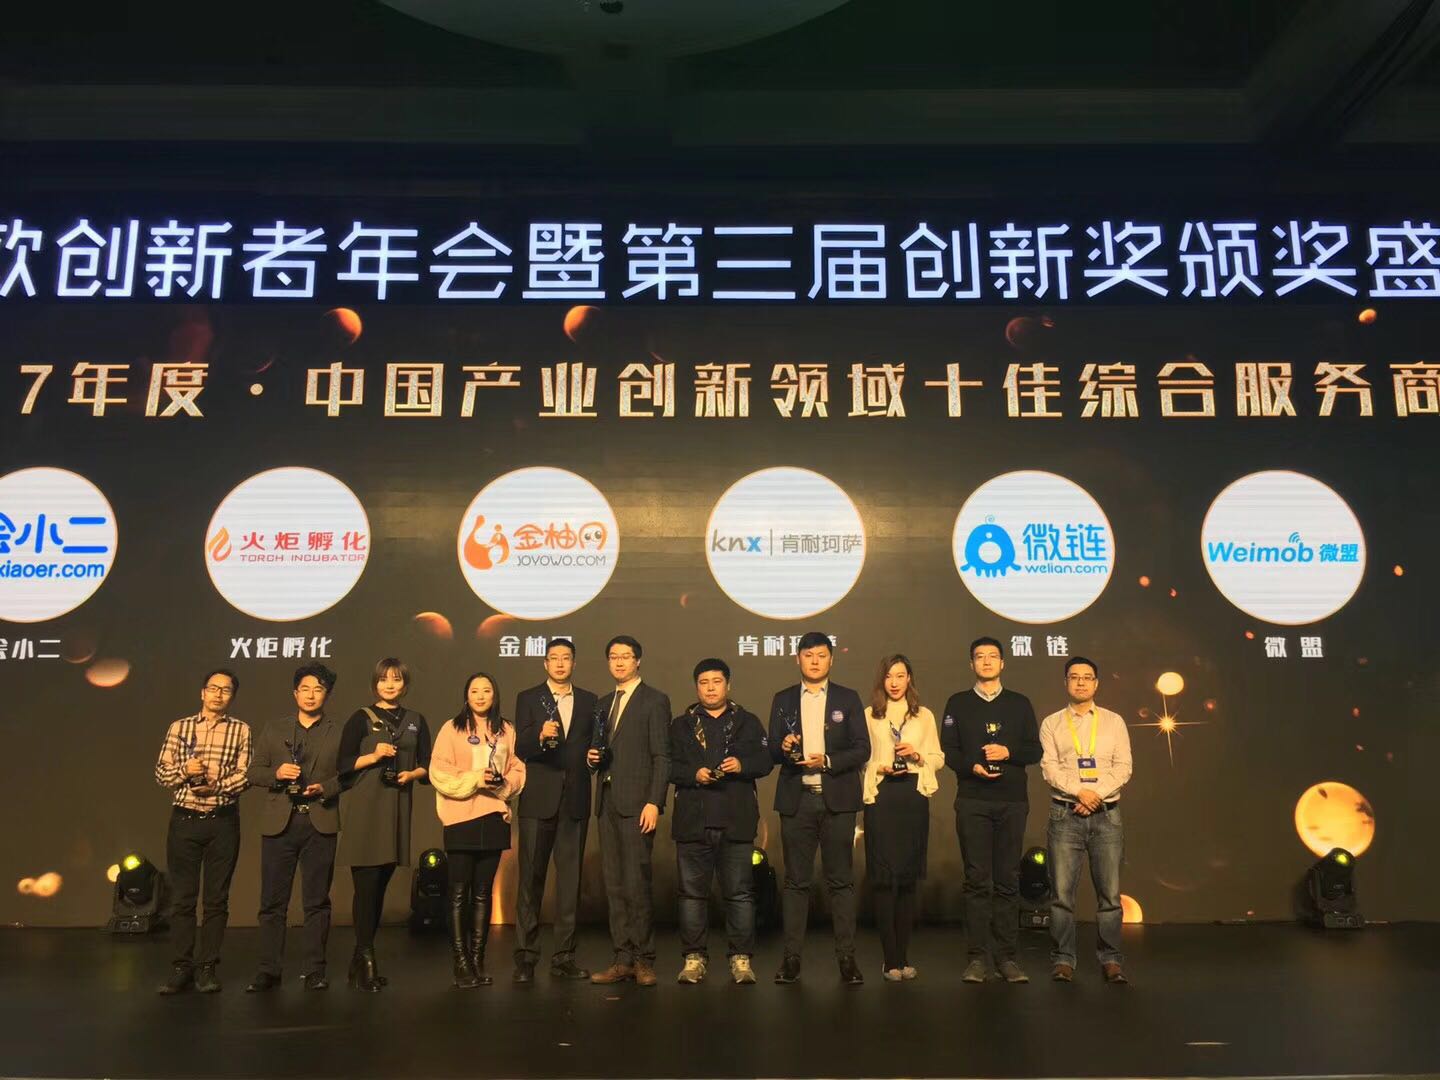 火炬孵化集团荣获2017亿欧创新者年会 “中国产业创新领域十佳综合服务商”